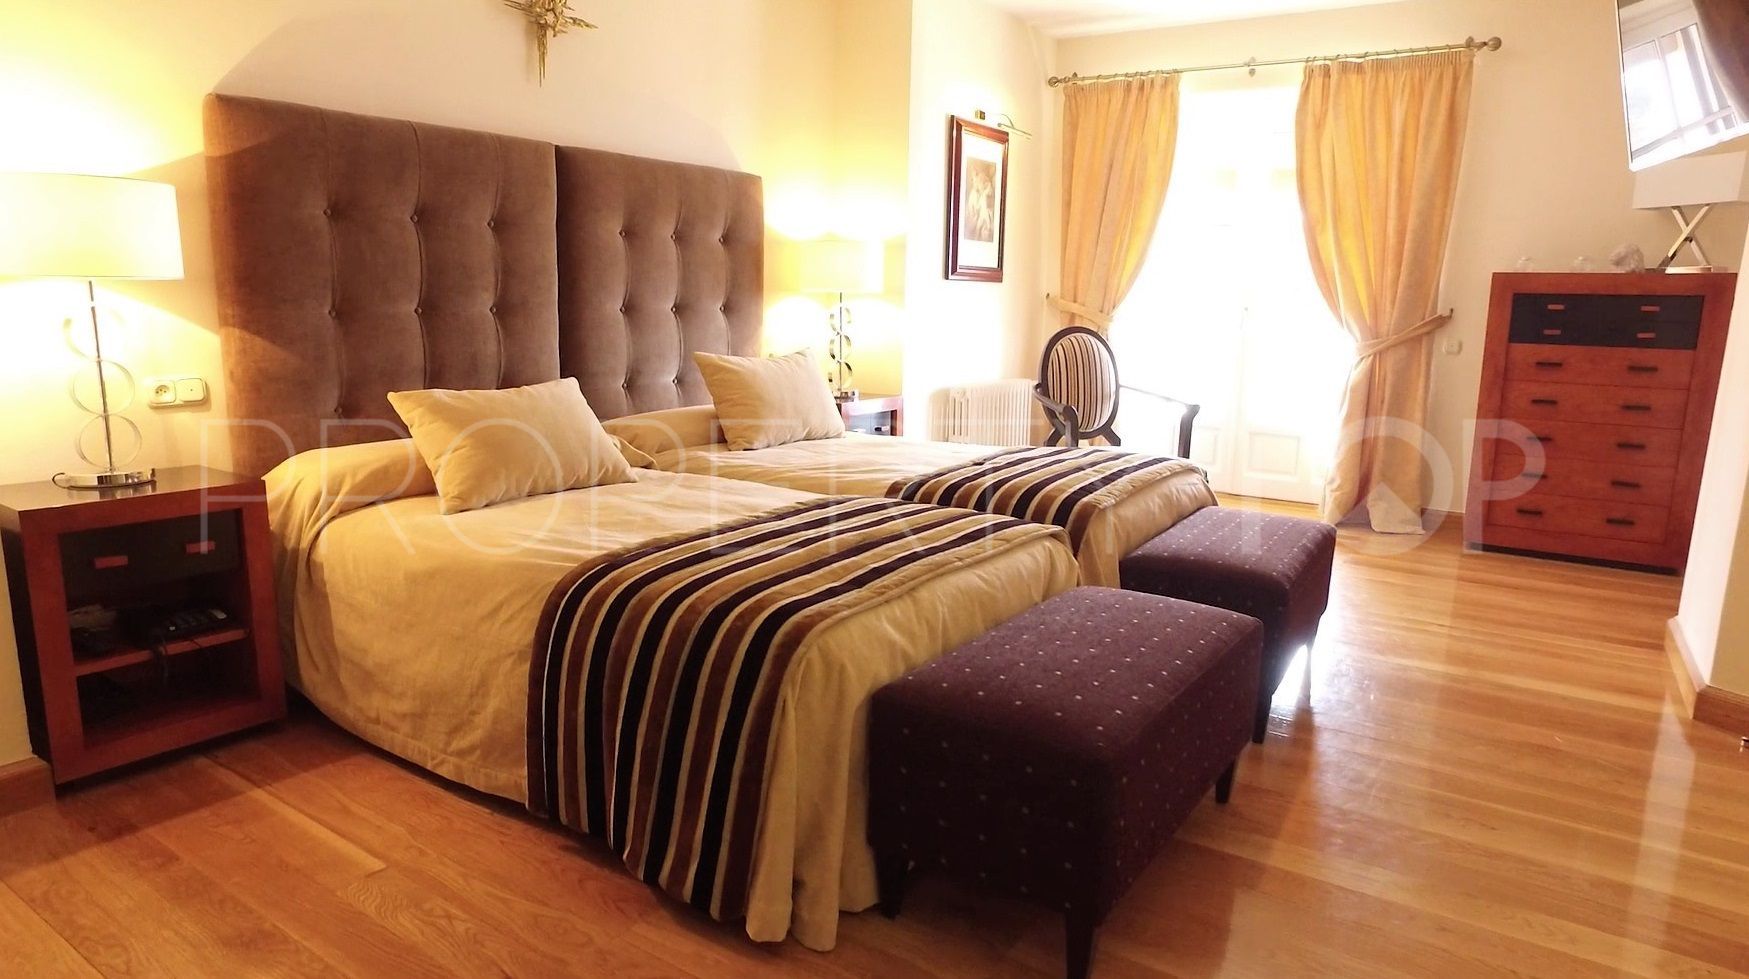 For sale 9 bedrooms finca in Ronda Centro